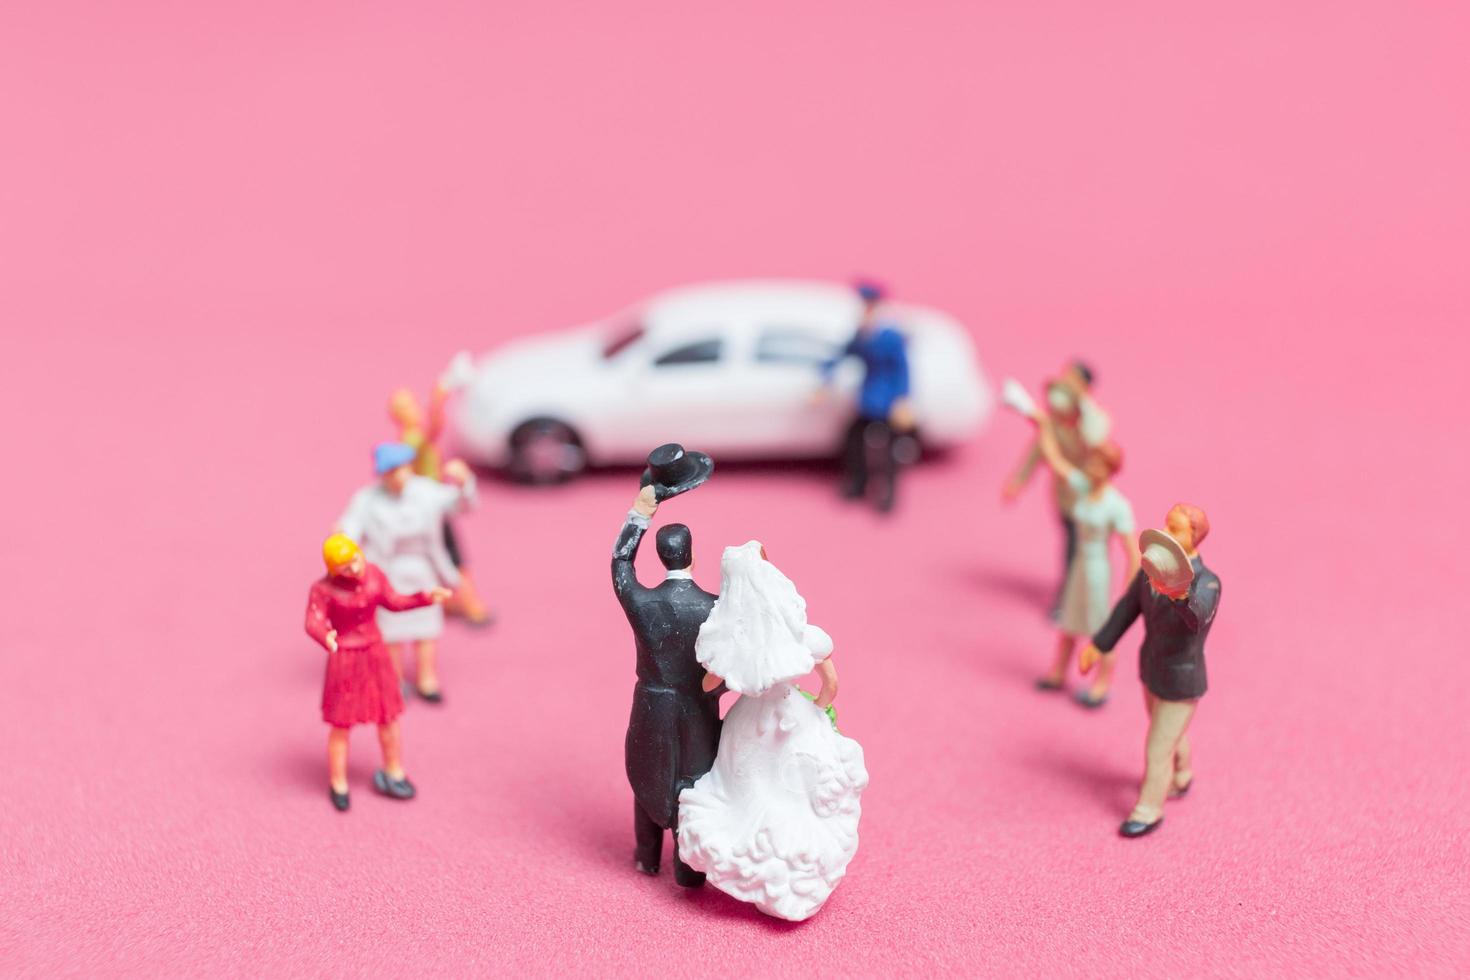 casamento em miniatura, uma noiva e um noivo em um fundo rosa foto